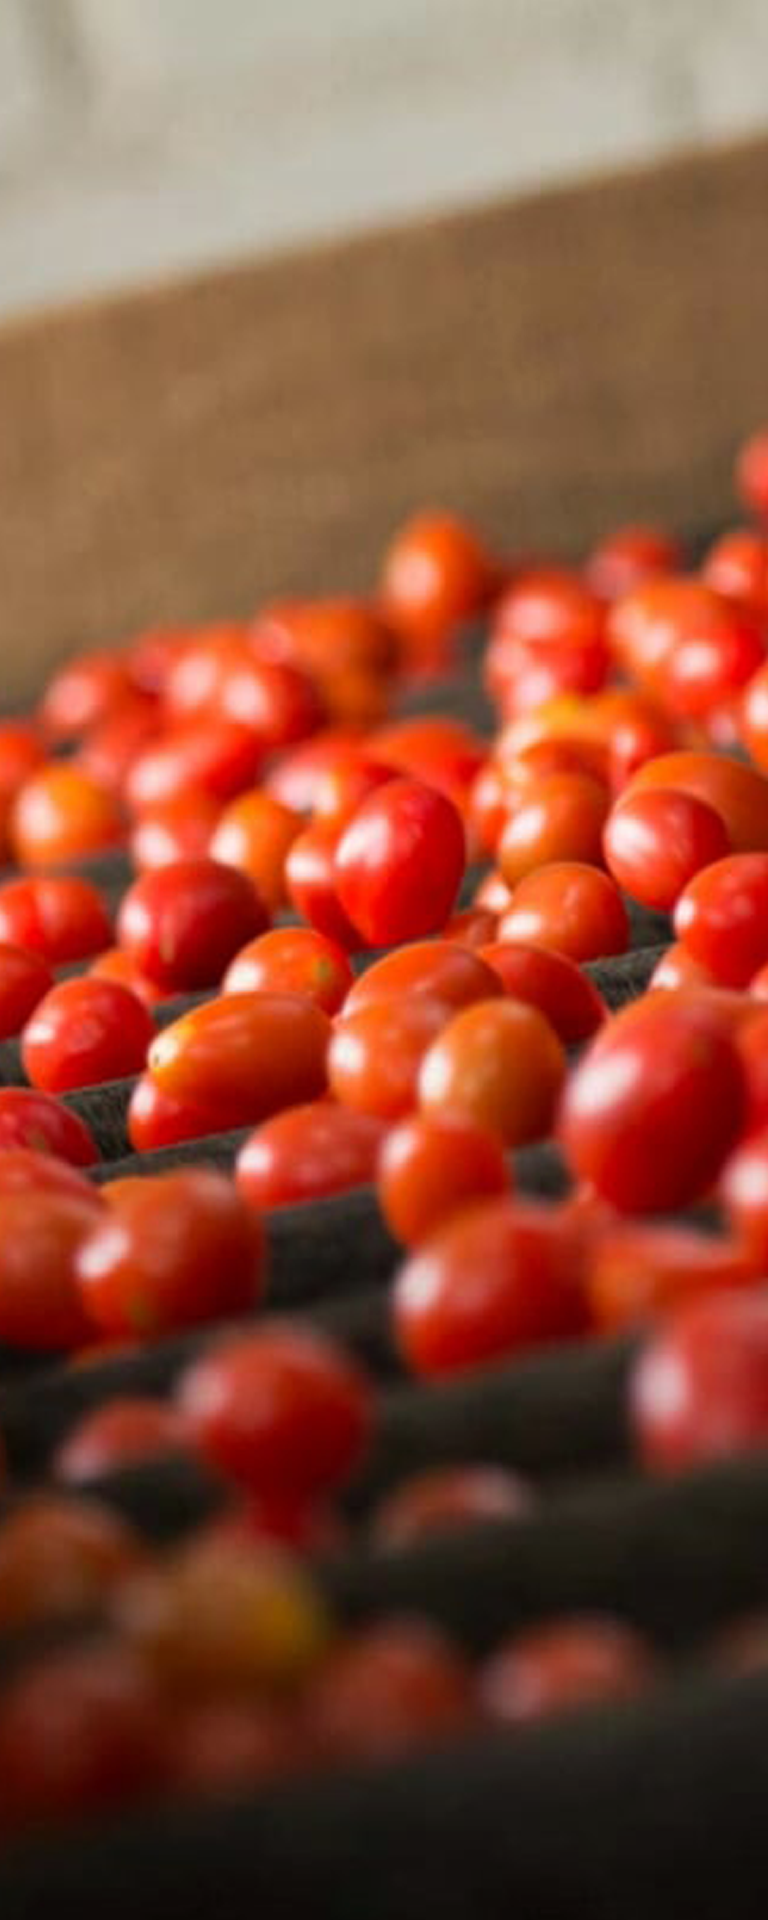 bh6-produtor-tomate-grape-kano-tomates-piedade